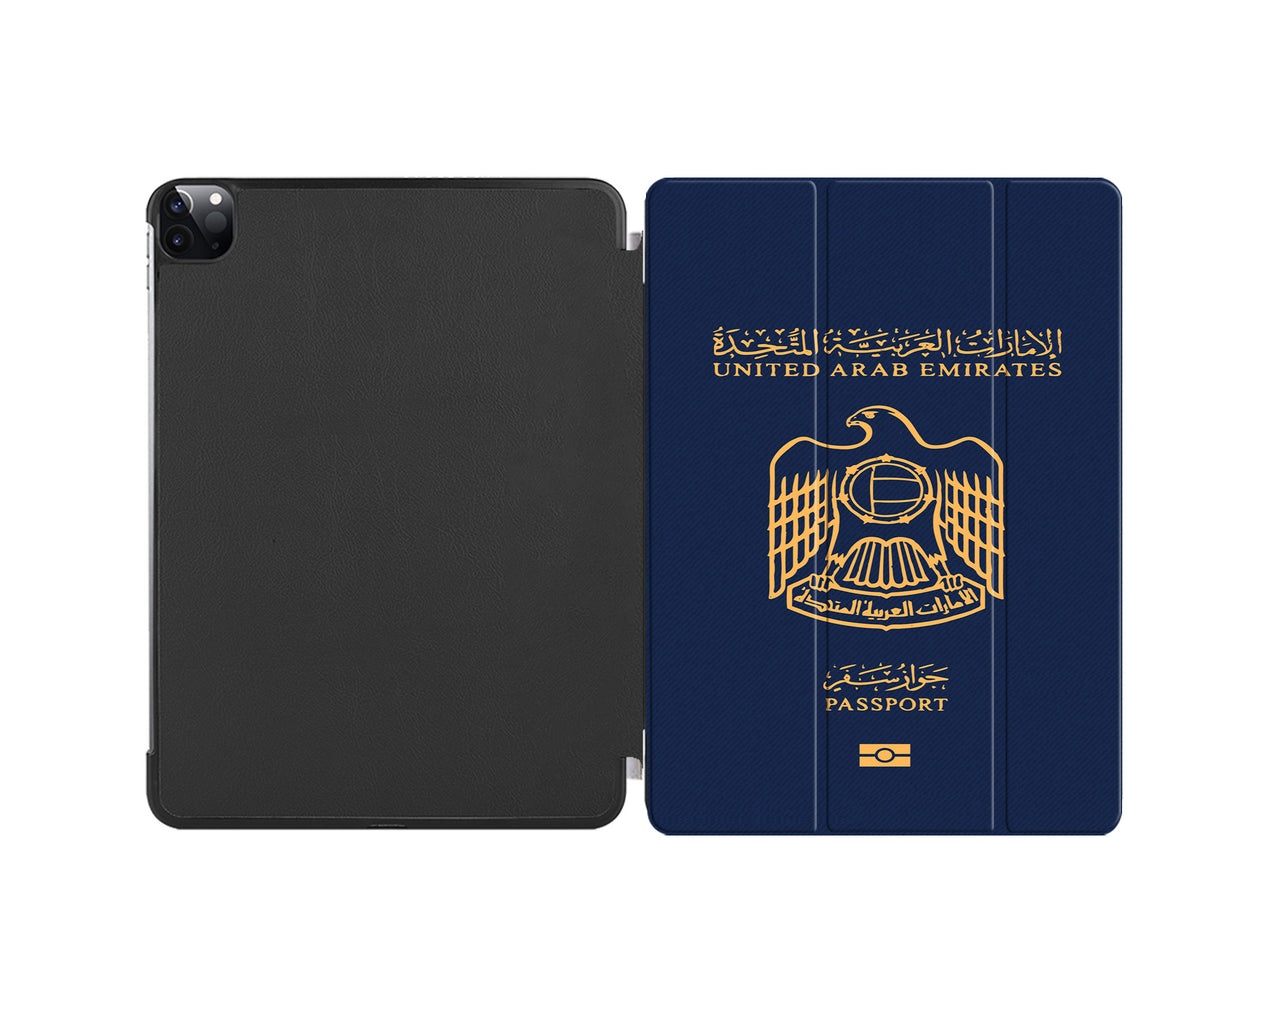 United Arab Emirates Passport Designed iPad Cases